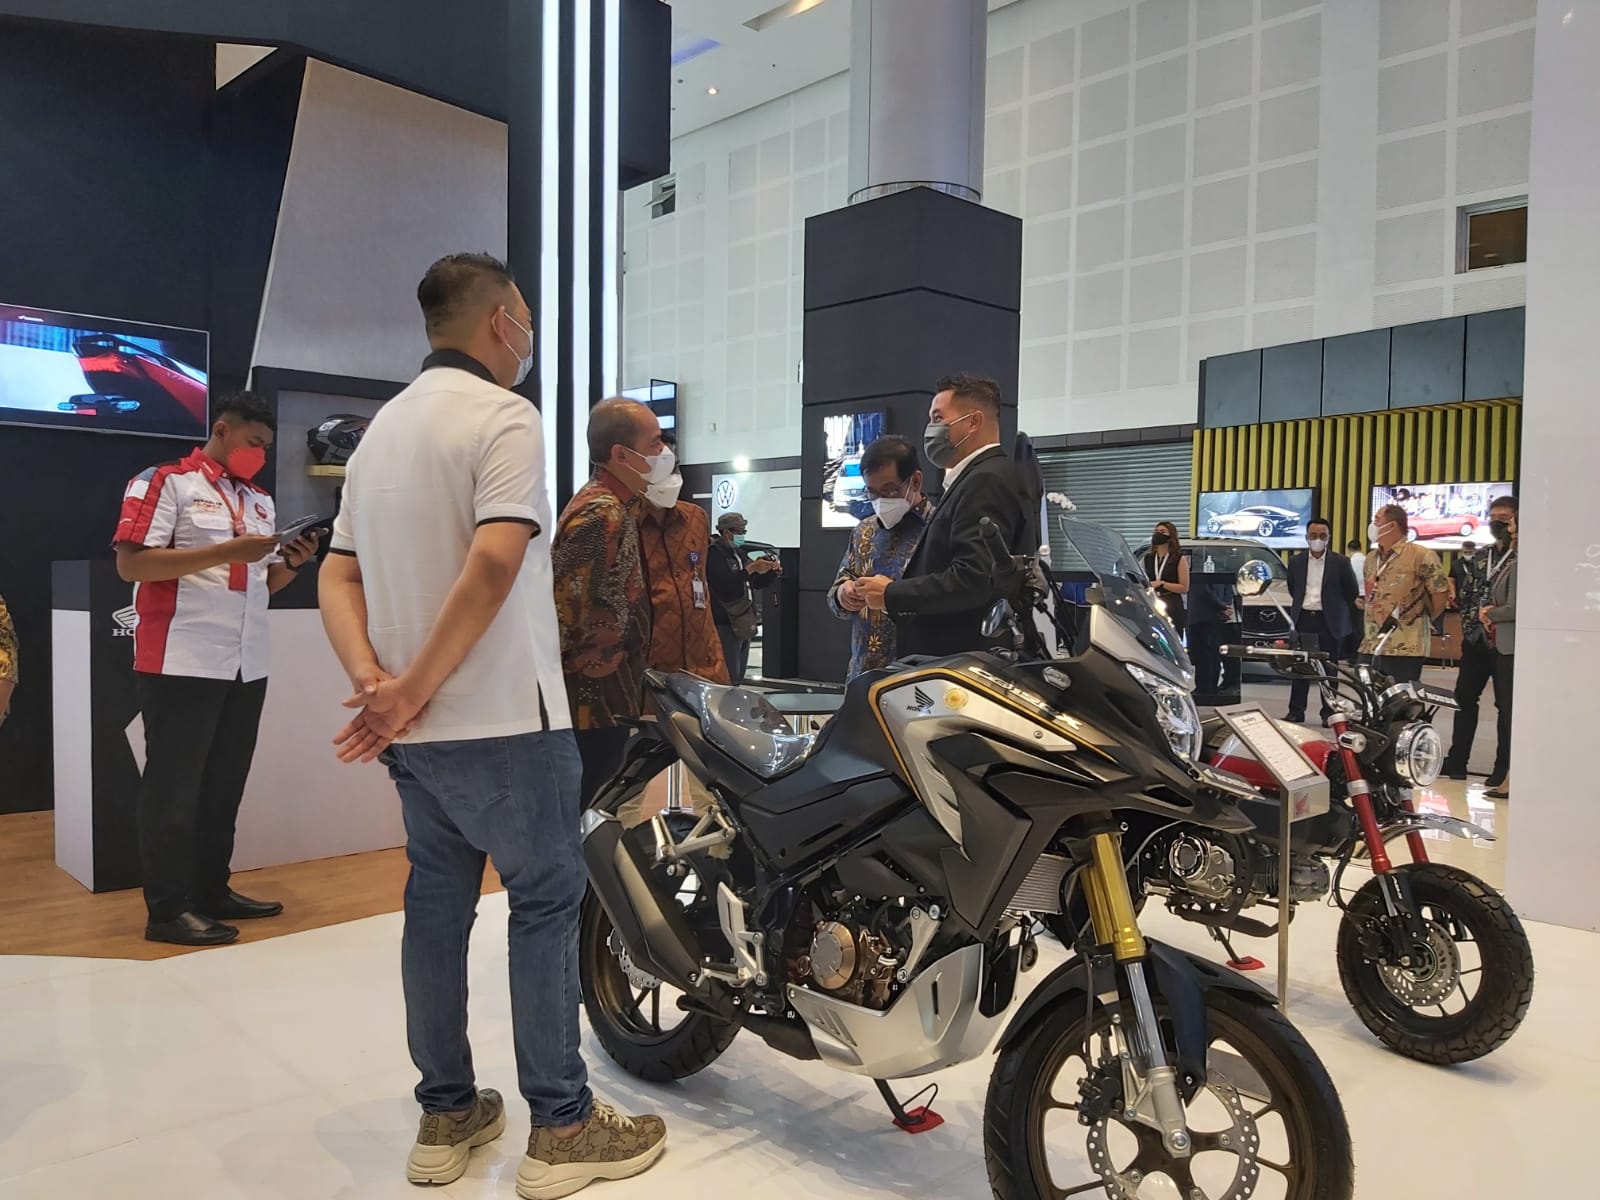 MPM Honda Jatim Hadirkan Motor Baru Honda ST125 Dax dan New Honda ADV160 di GIIAS Surabaya 2022